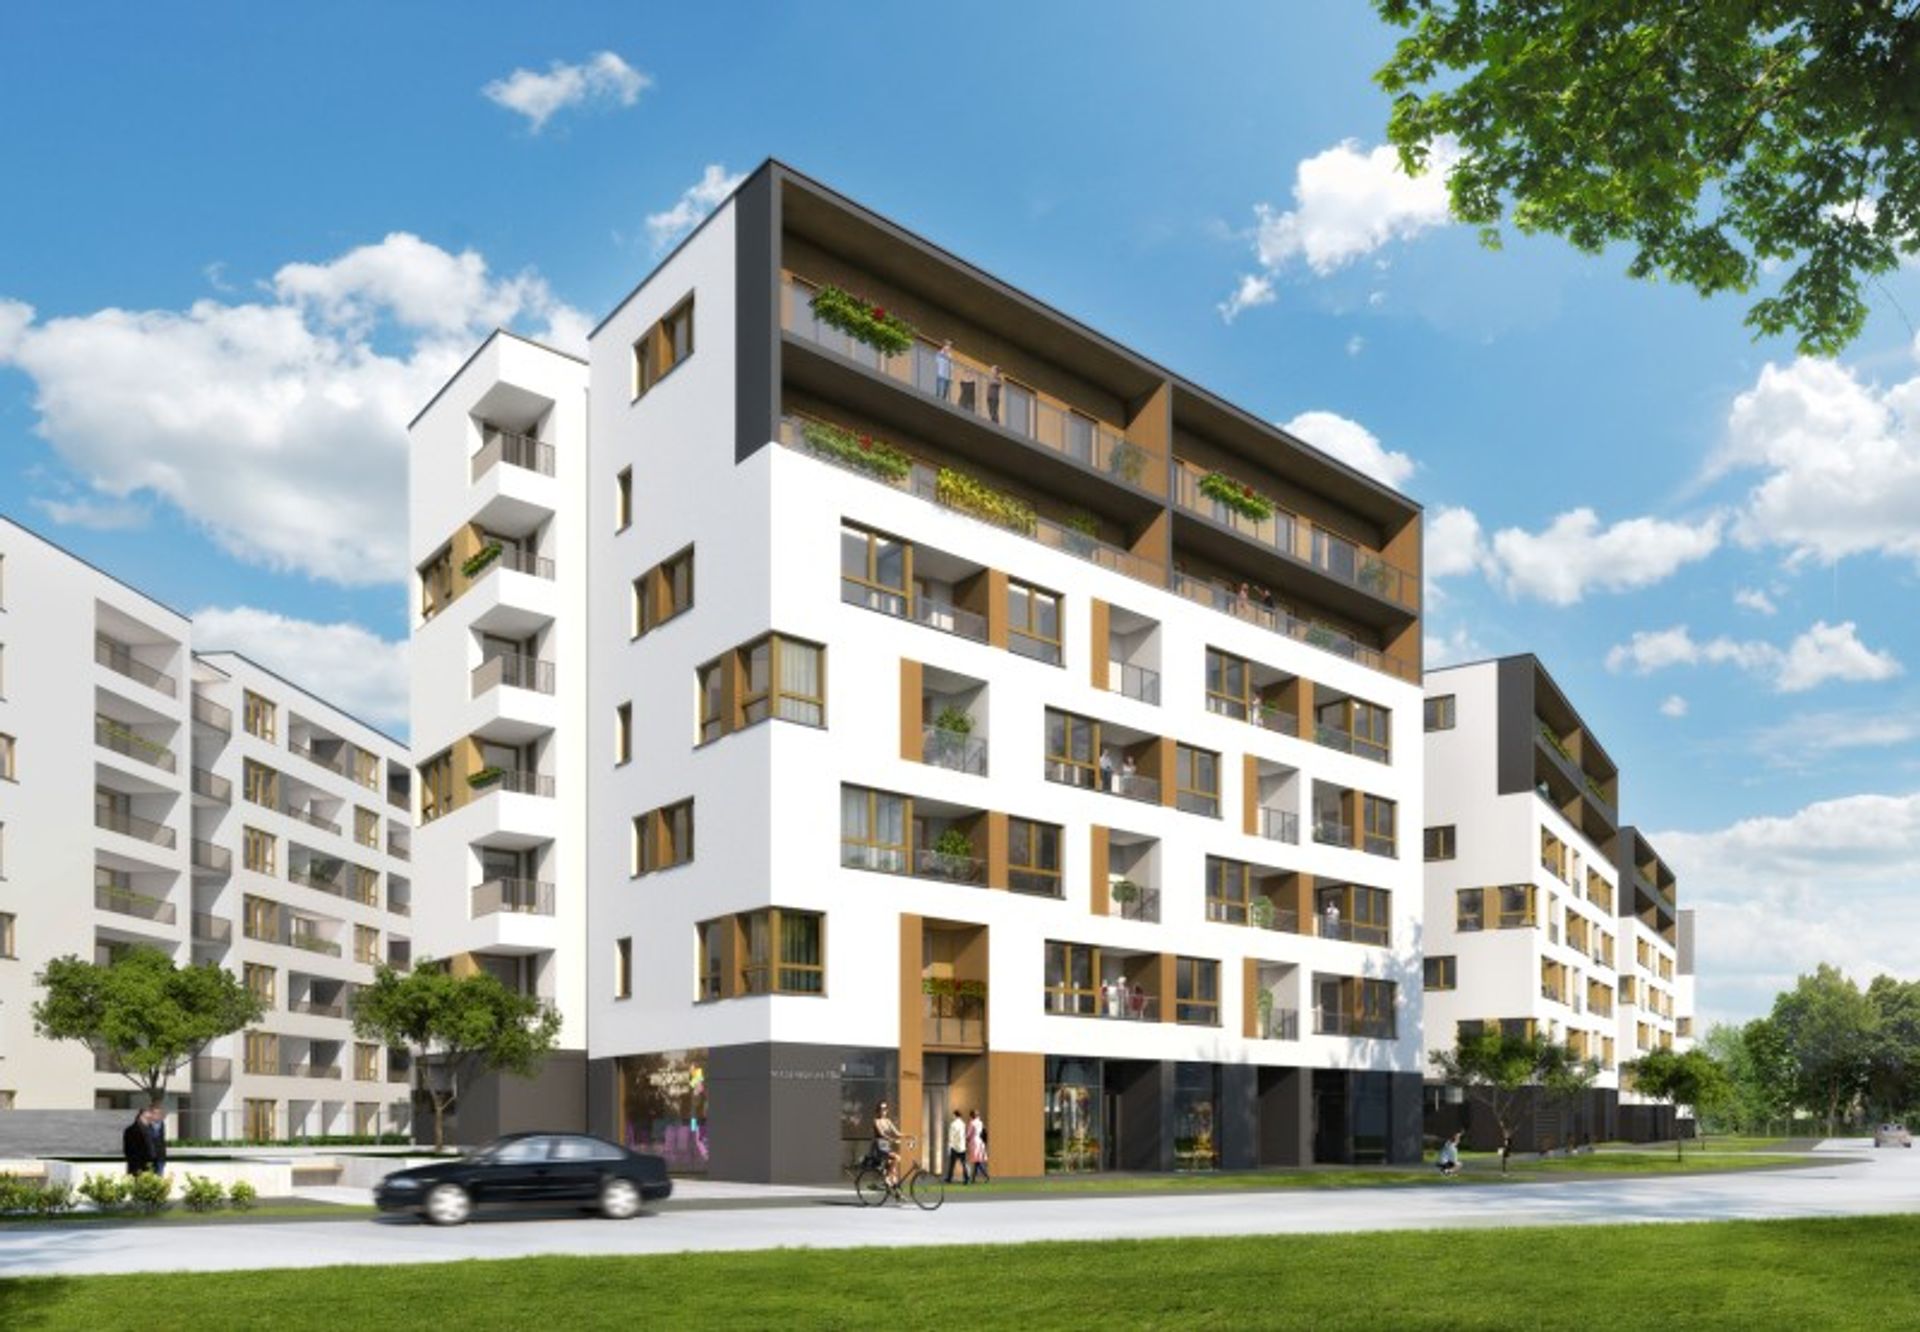  Yareal rozpoczyna swoją największą inwestycją mieszkaniową &#8211; Kolorowy Gocław